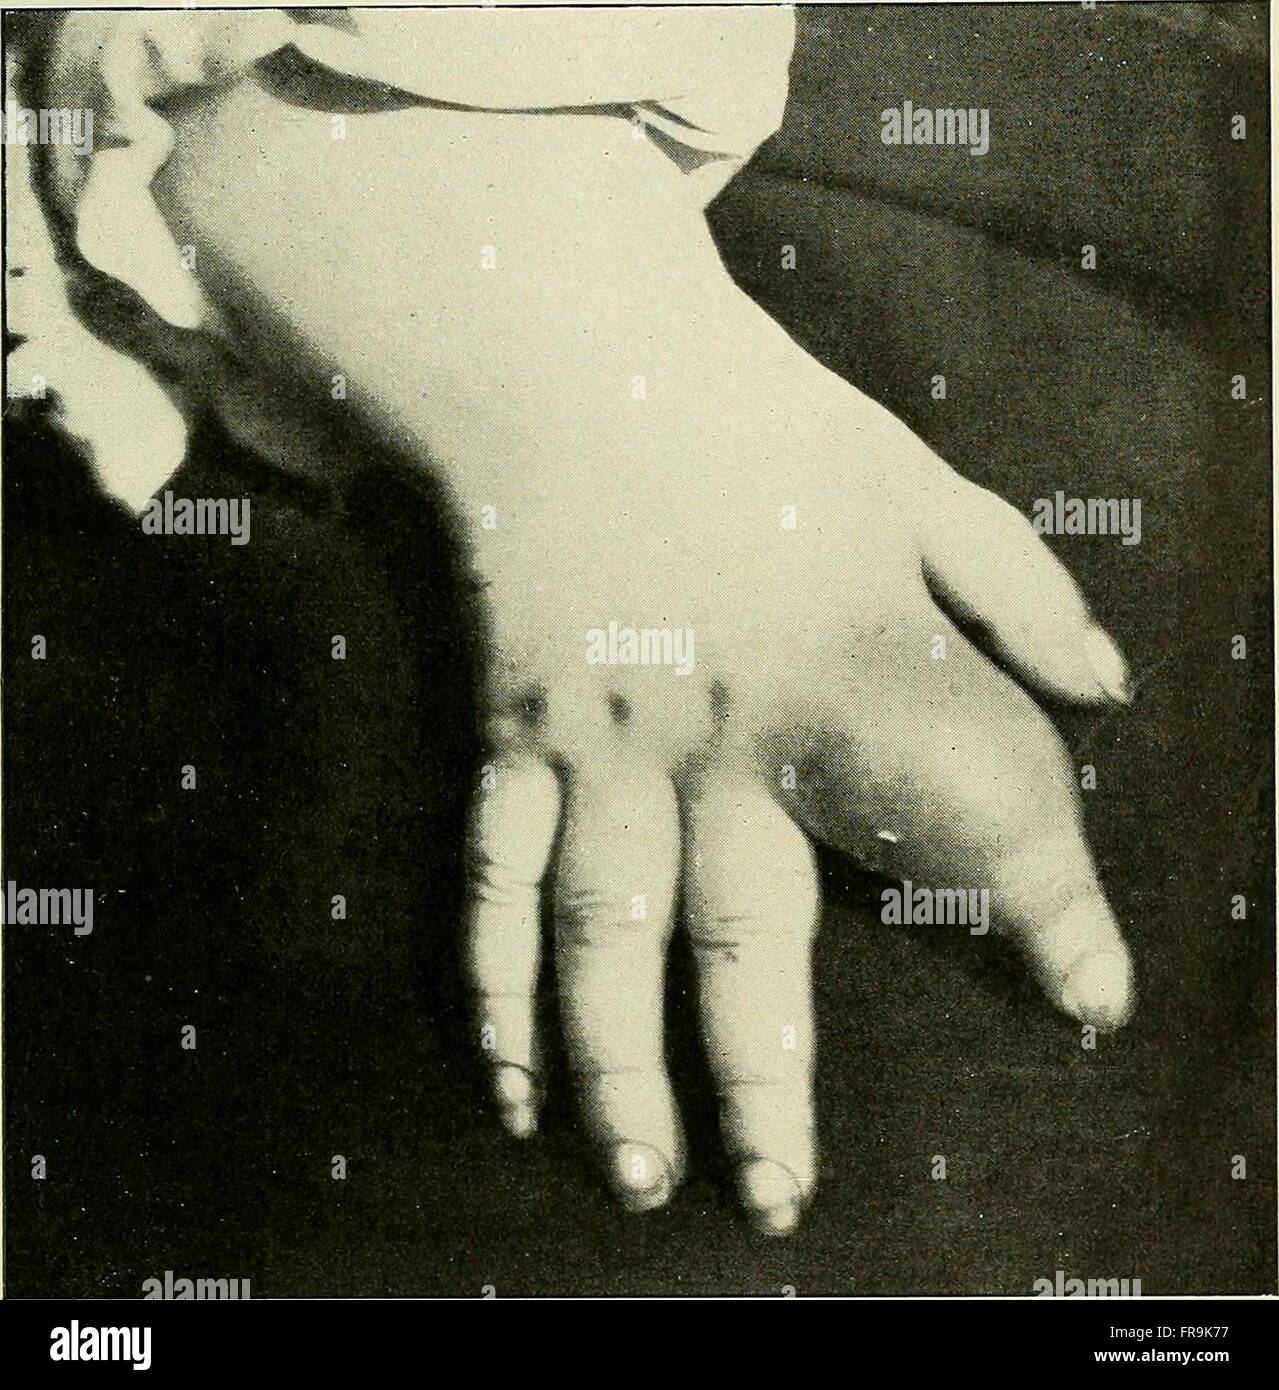 Recherche et diagnostic de l'hC3A9rC3A9do-syphilis tardive (1907) Stock Photo